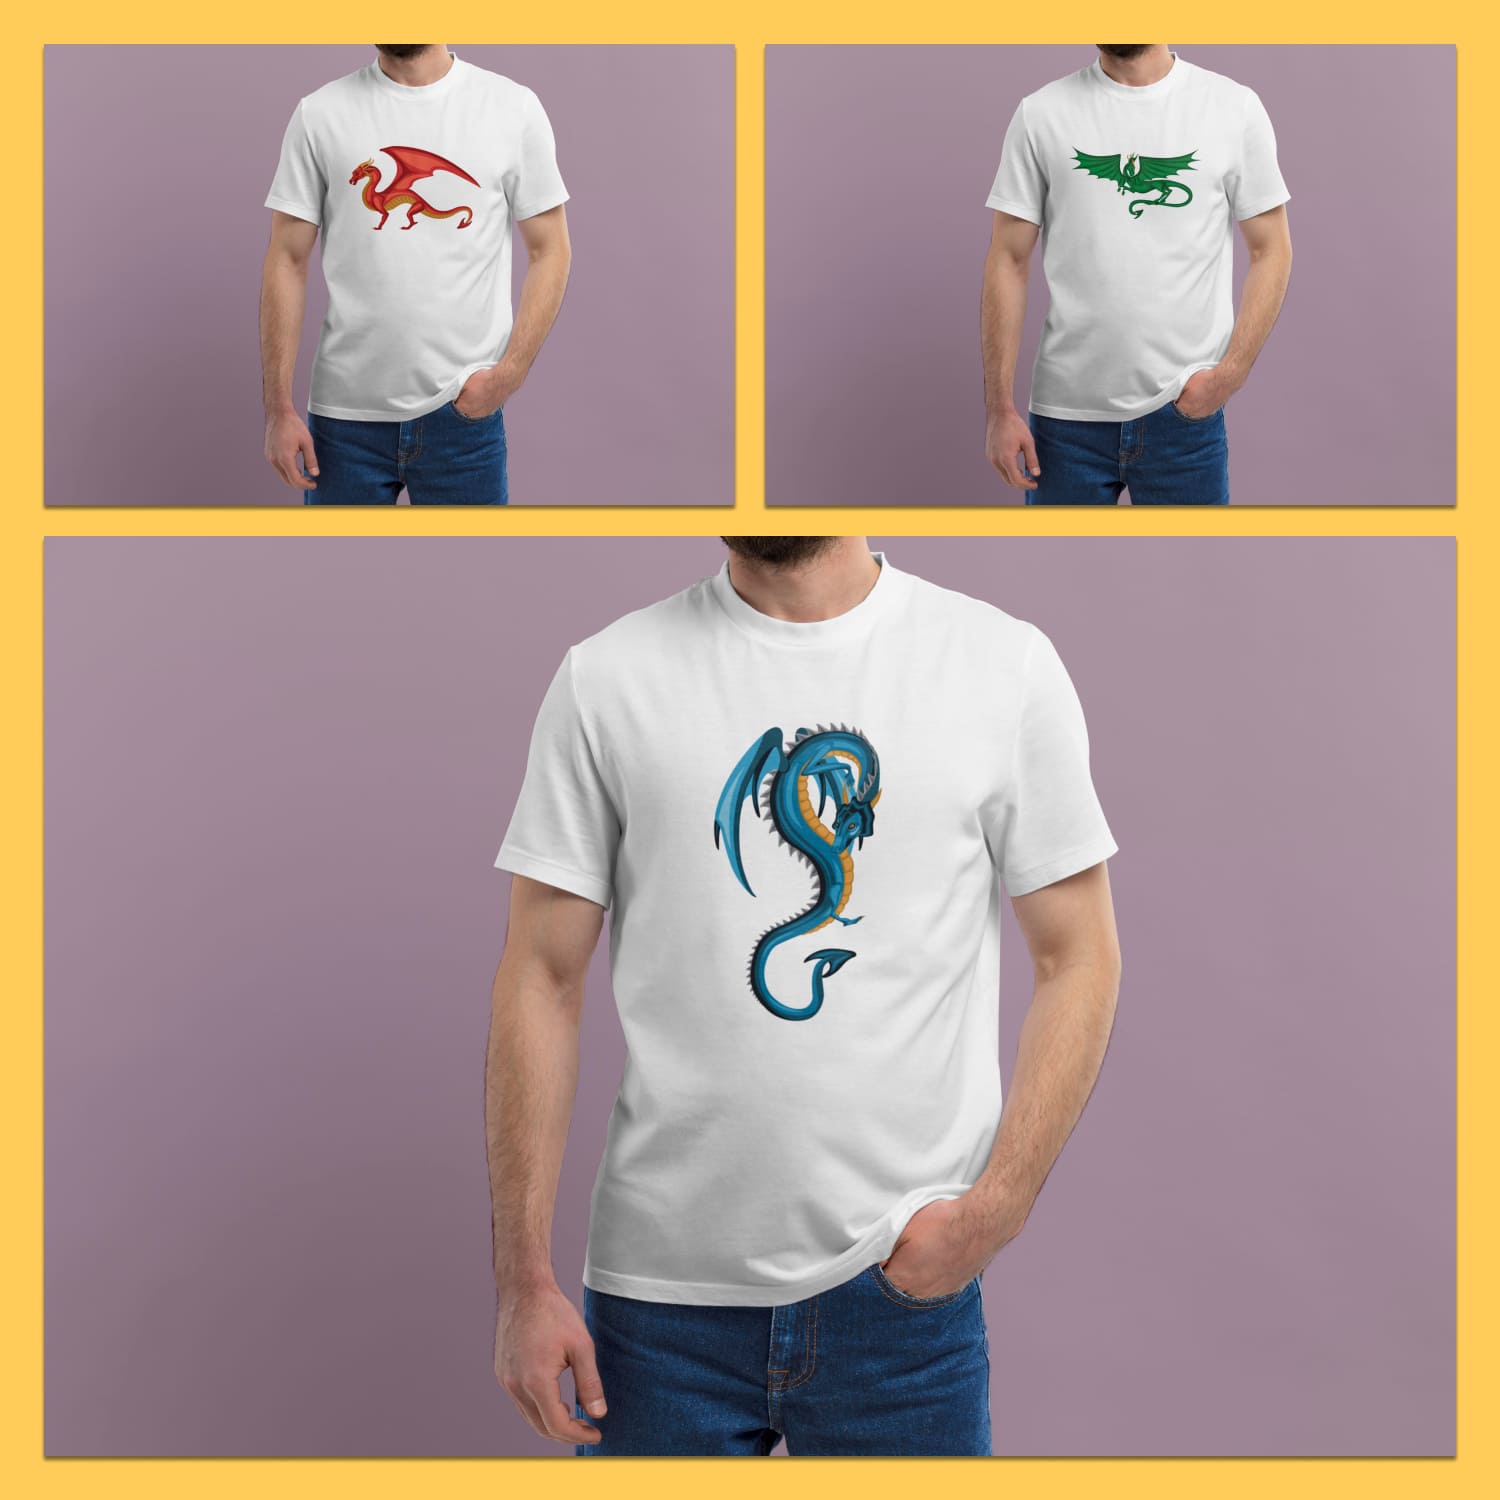 Dragon T-shirt Designs Bundle Cover.